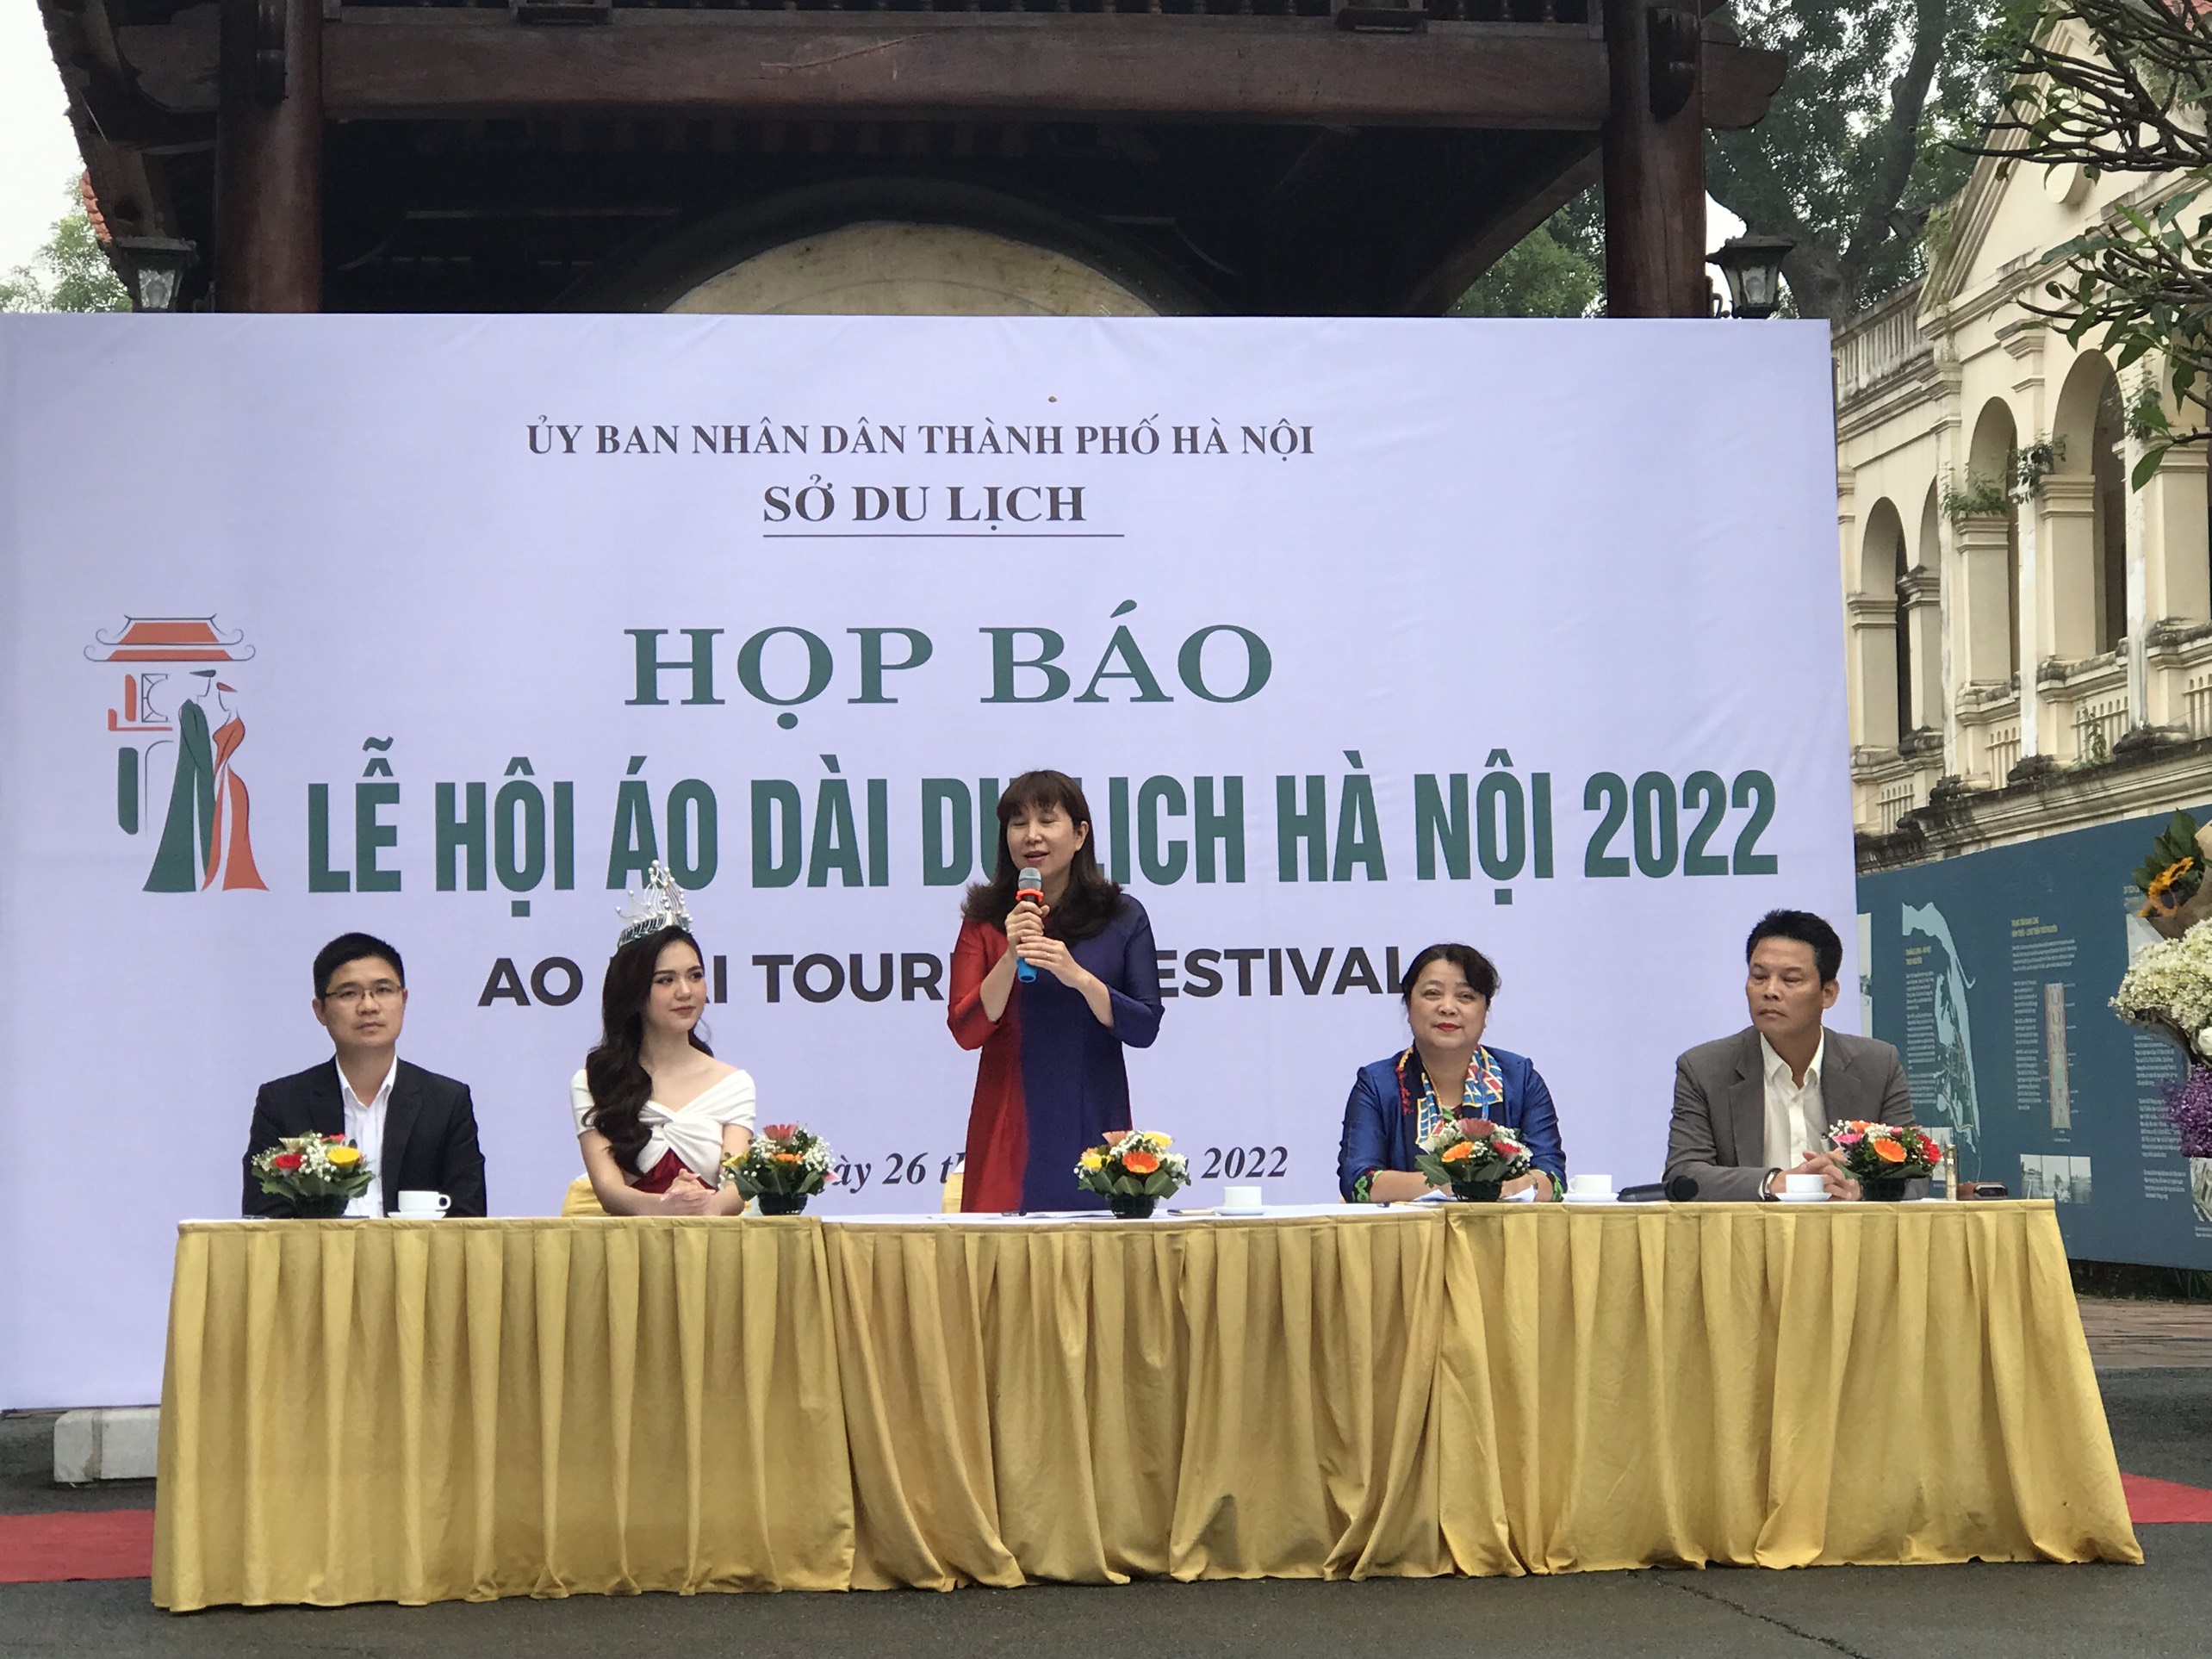 Bà Đặng Hương Giang, Giám đốc Sở Du lịch Hà Nội chia sẻ tại buổi họp báo về Lễ hội Áo dài du lịch Hà Nội 2022